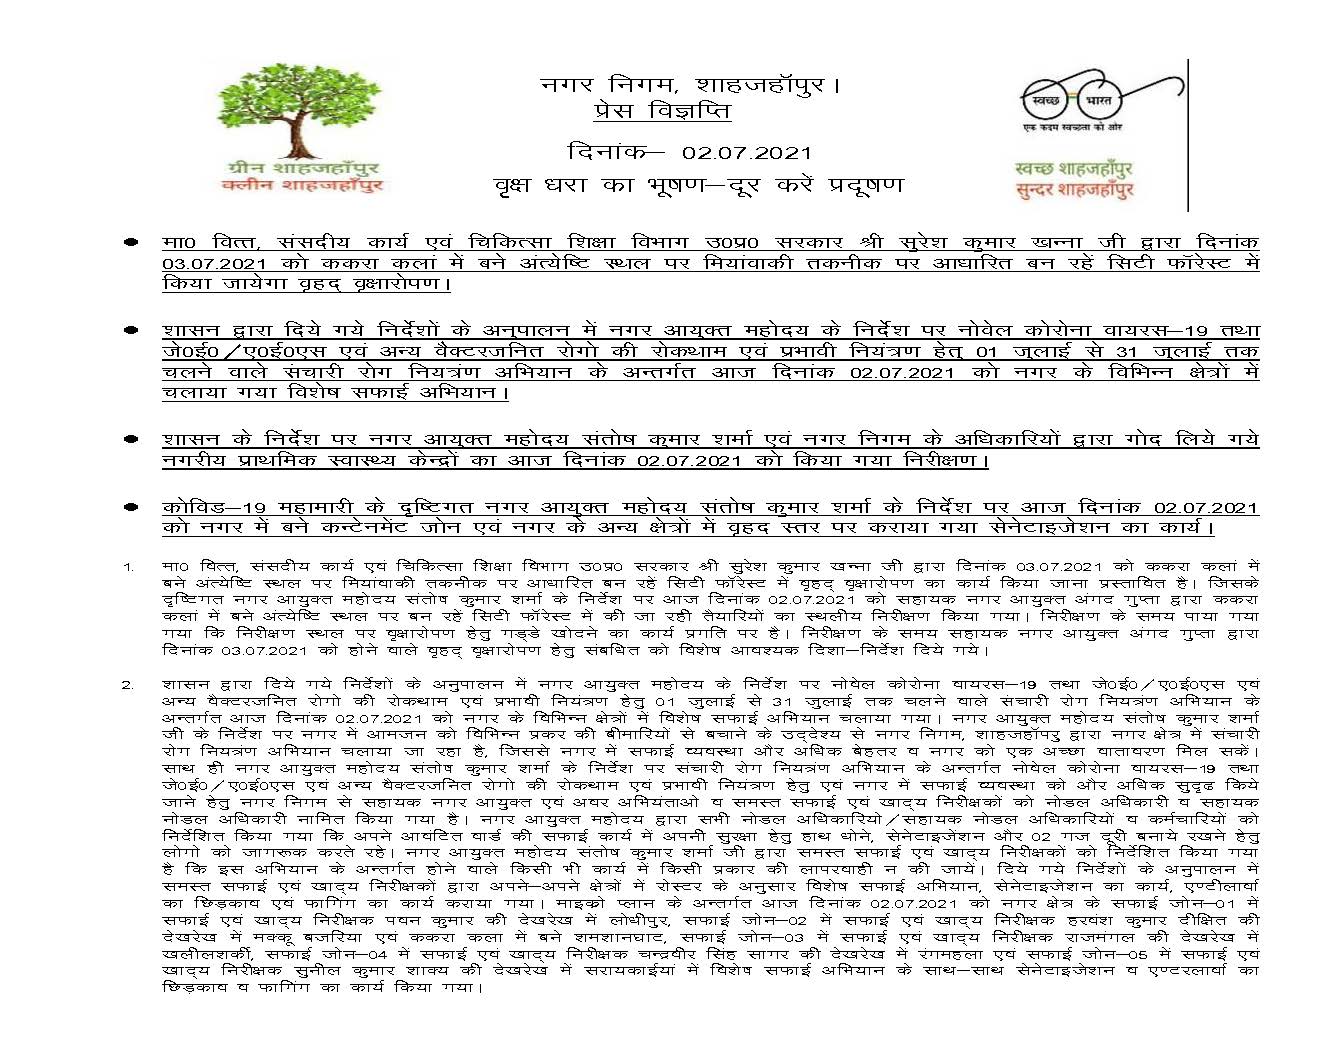 मा0 मंत्री, श्री सुरेश कुमार खन्ना जी द्वारा दिनांक 03-07-2021 को सिटी फॉरेस्ट में किया जाएगा वृहद् वृक्षारोपण।